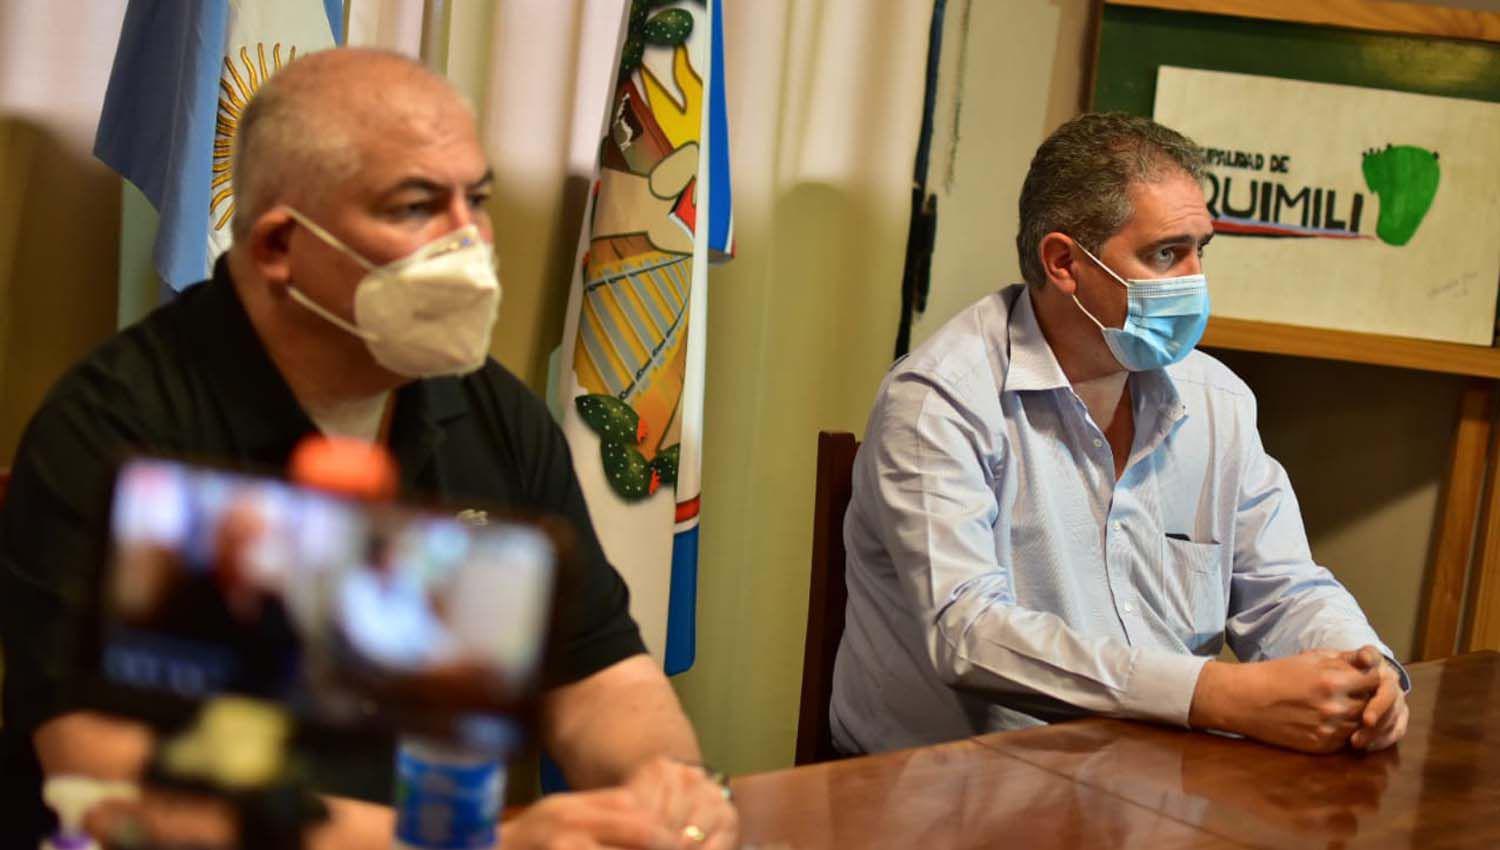 Quimiliacute aguarda el resultado de los uacuteltimos hisopados para tomar medidas